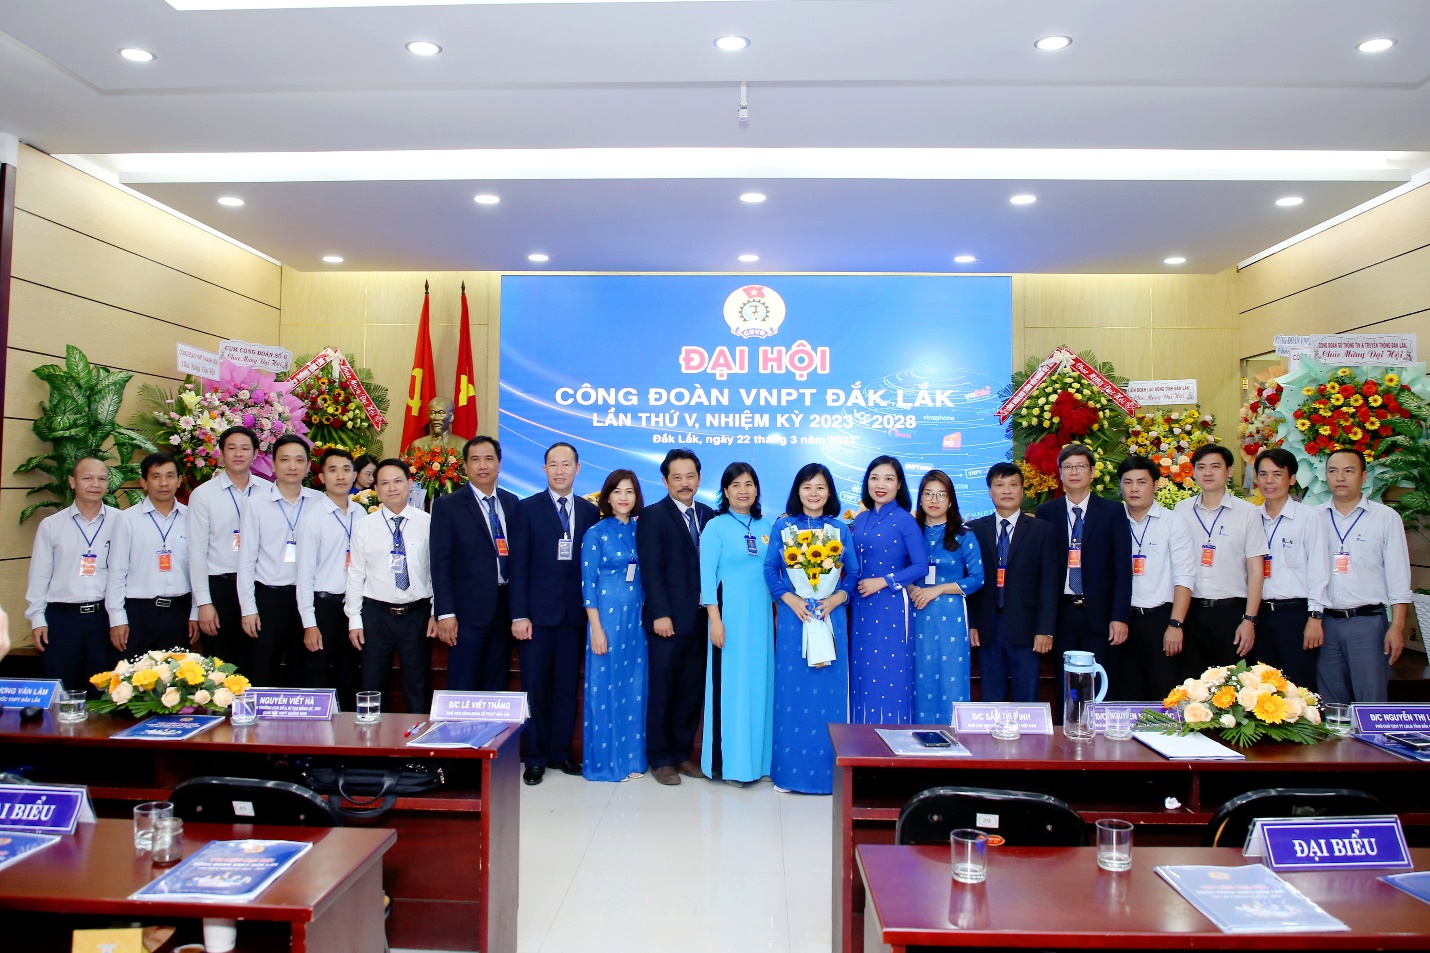 Công đoàn VNPT Đắk Lắk tổ chức thành công Đại hội Công đoàn lần thứ V, nhiệm kỳ 2023 – 2028